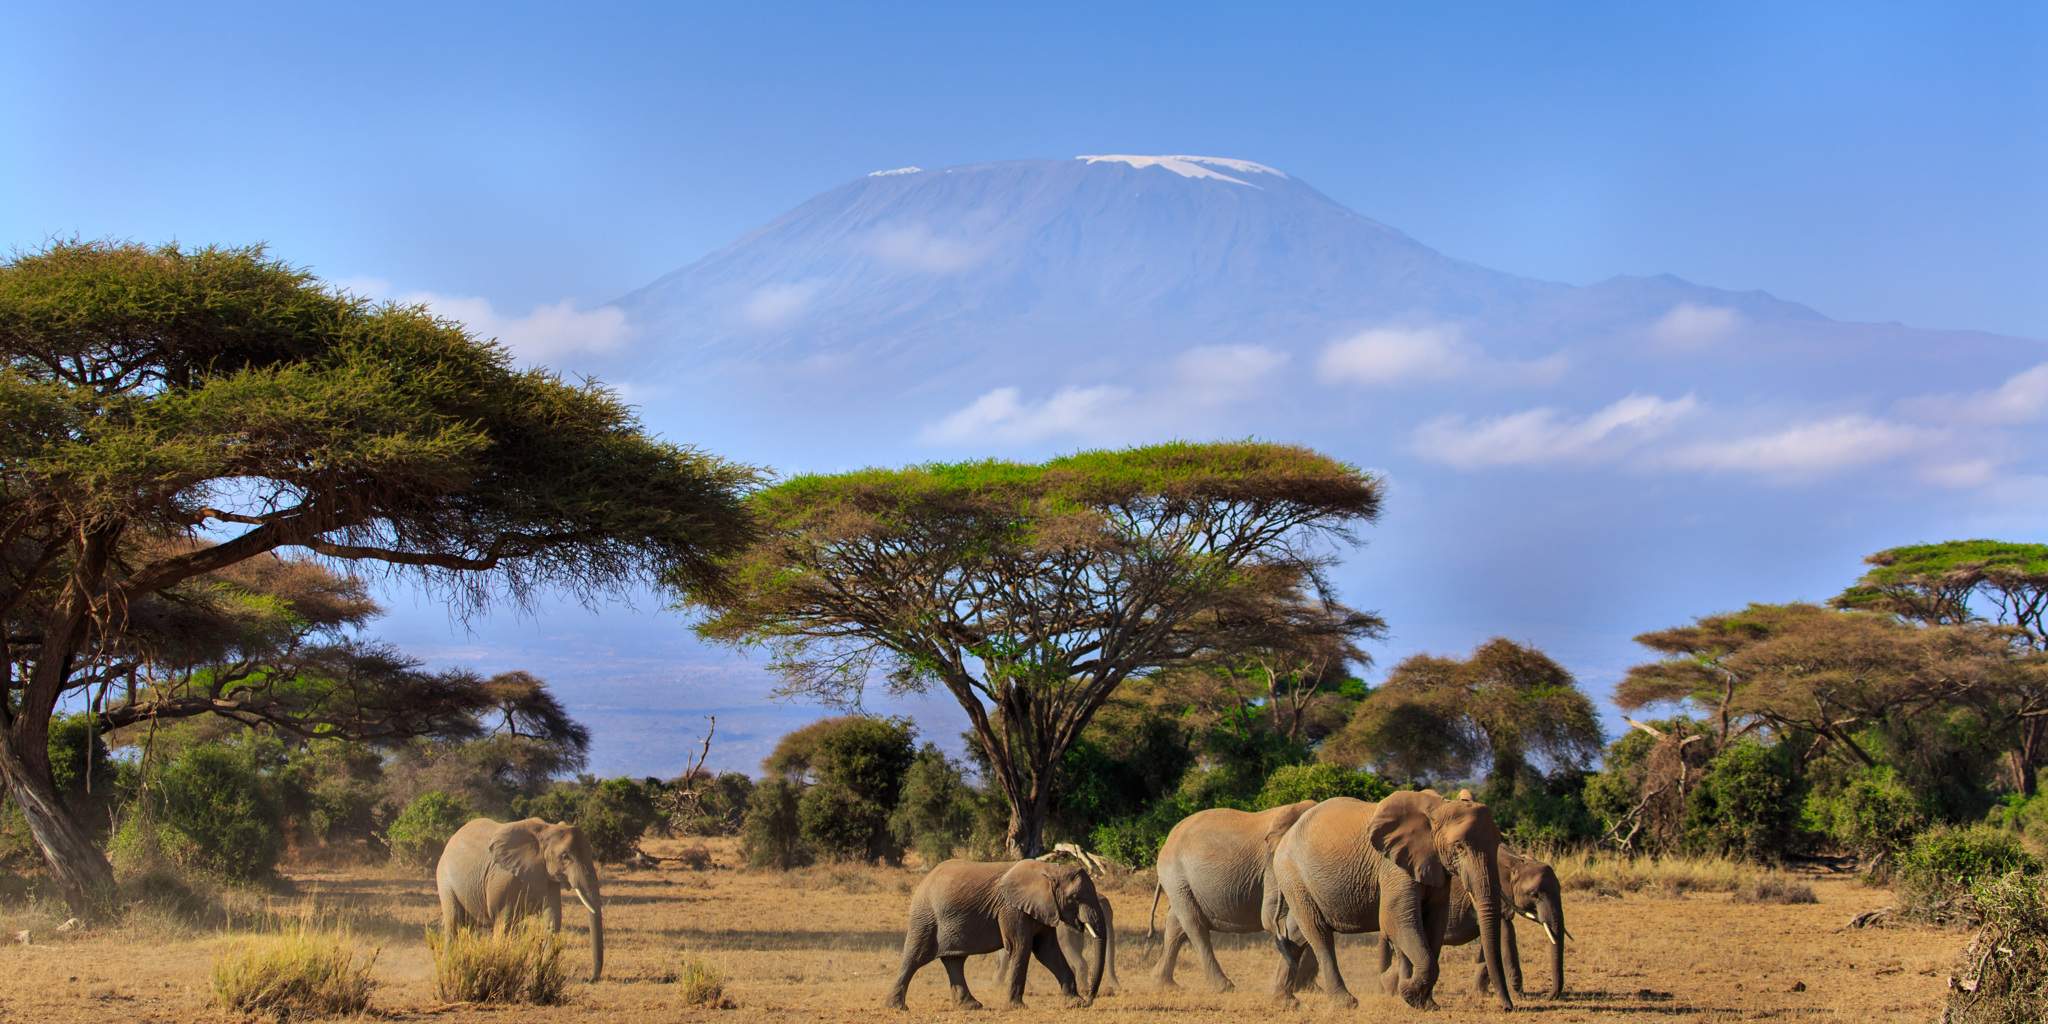 Саванной восточной африки. Парк Амбосели Кения. Национальный парк Килиманджаро в Африке. Саванна Африка Килиманджаро.